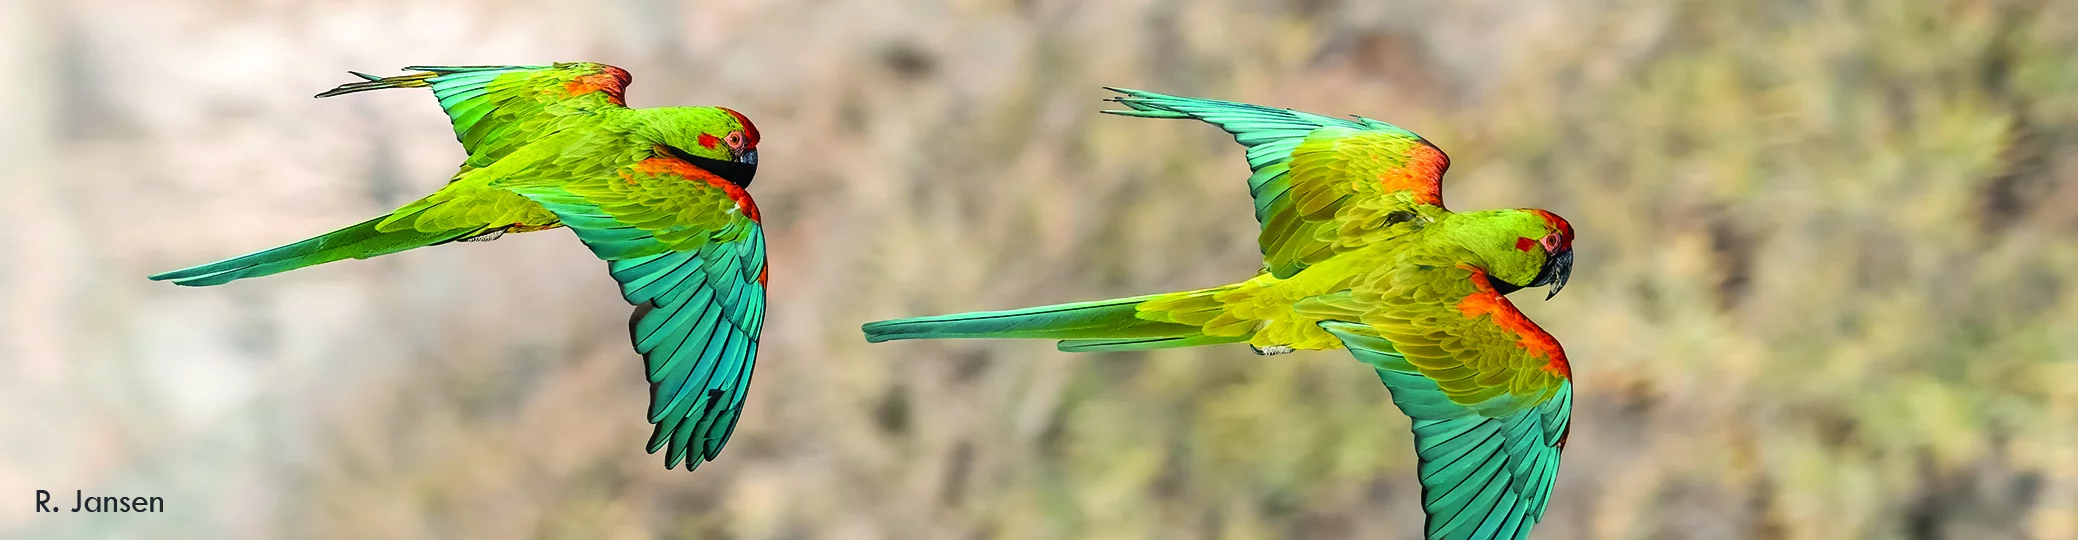 Zwei türkis-grün-rote Aras fliegend in der Luft in einer Ansicht von 15 Grad von oben.